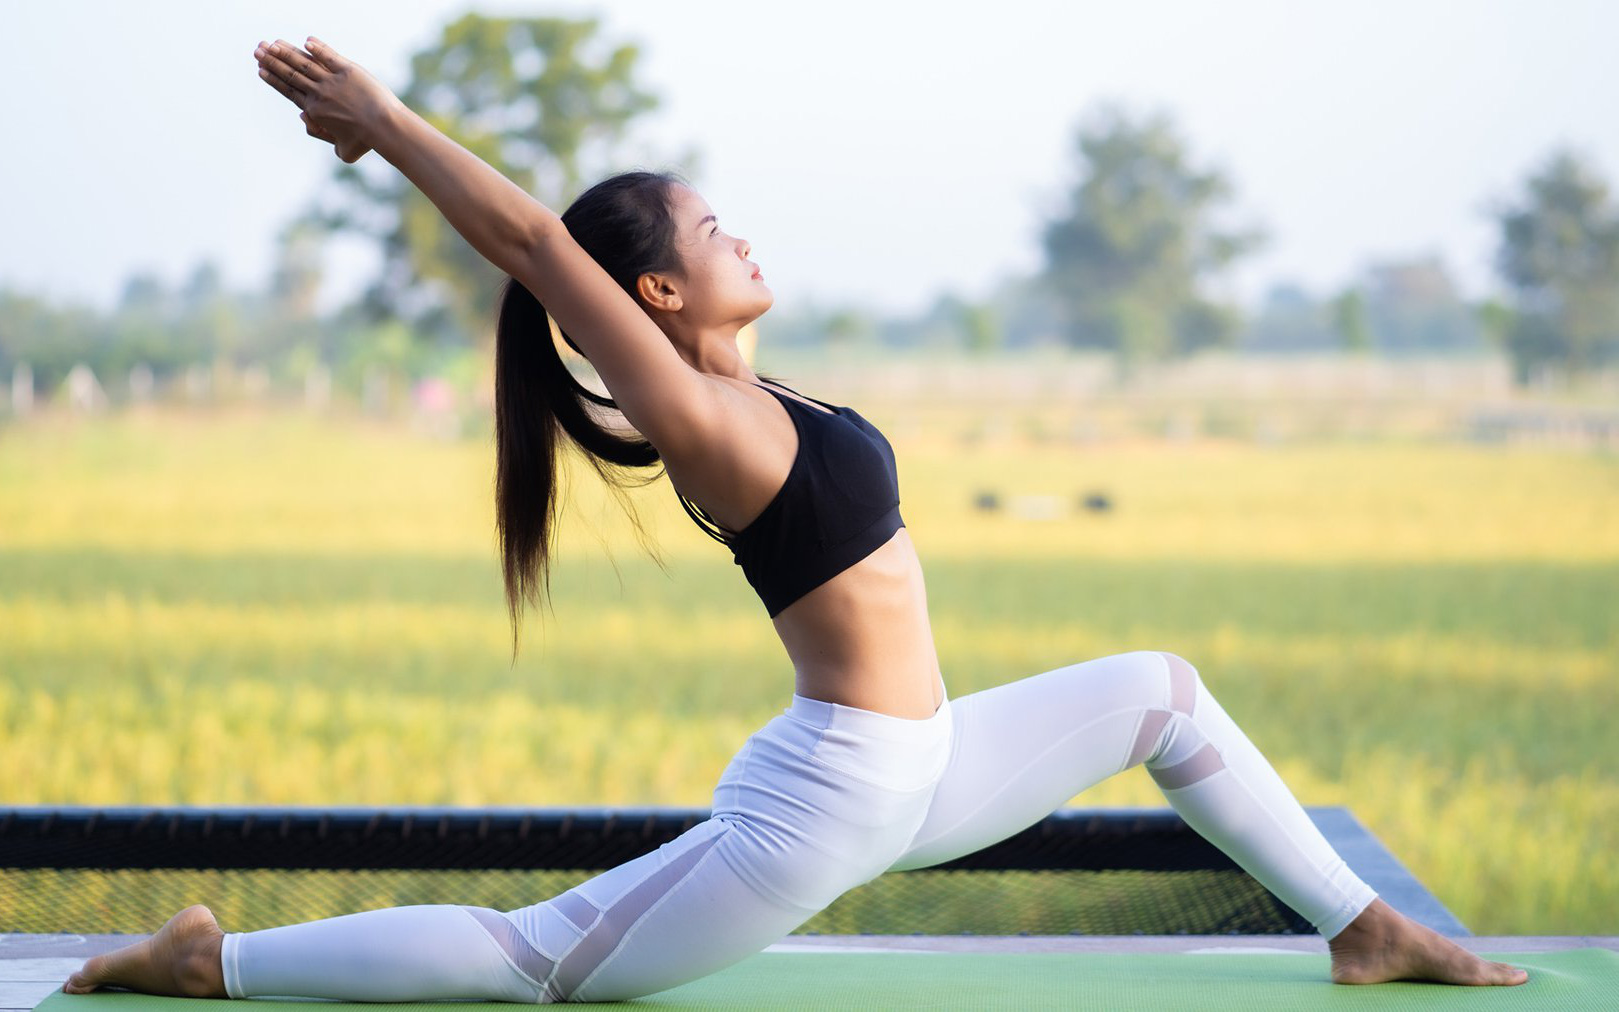 5 lưu ý cần nắm rõ khi tập thể dục trong mùa hè để tránh chấn thương và làm mất hiệu quả giảm cân